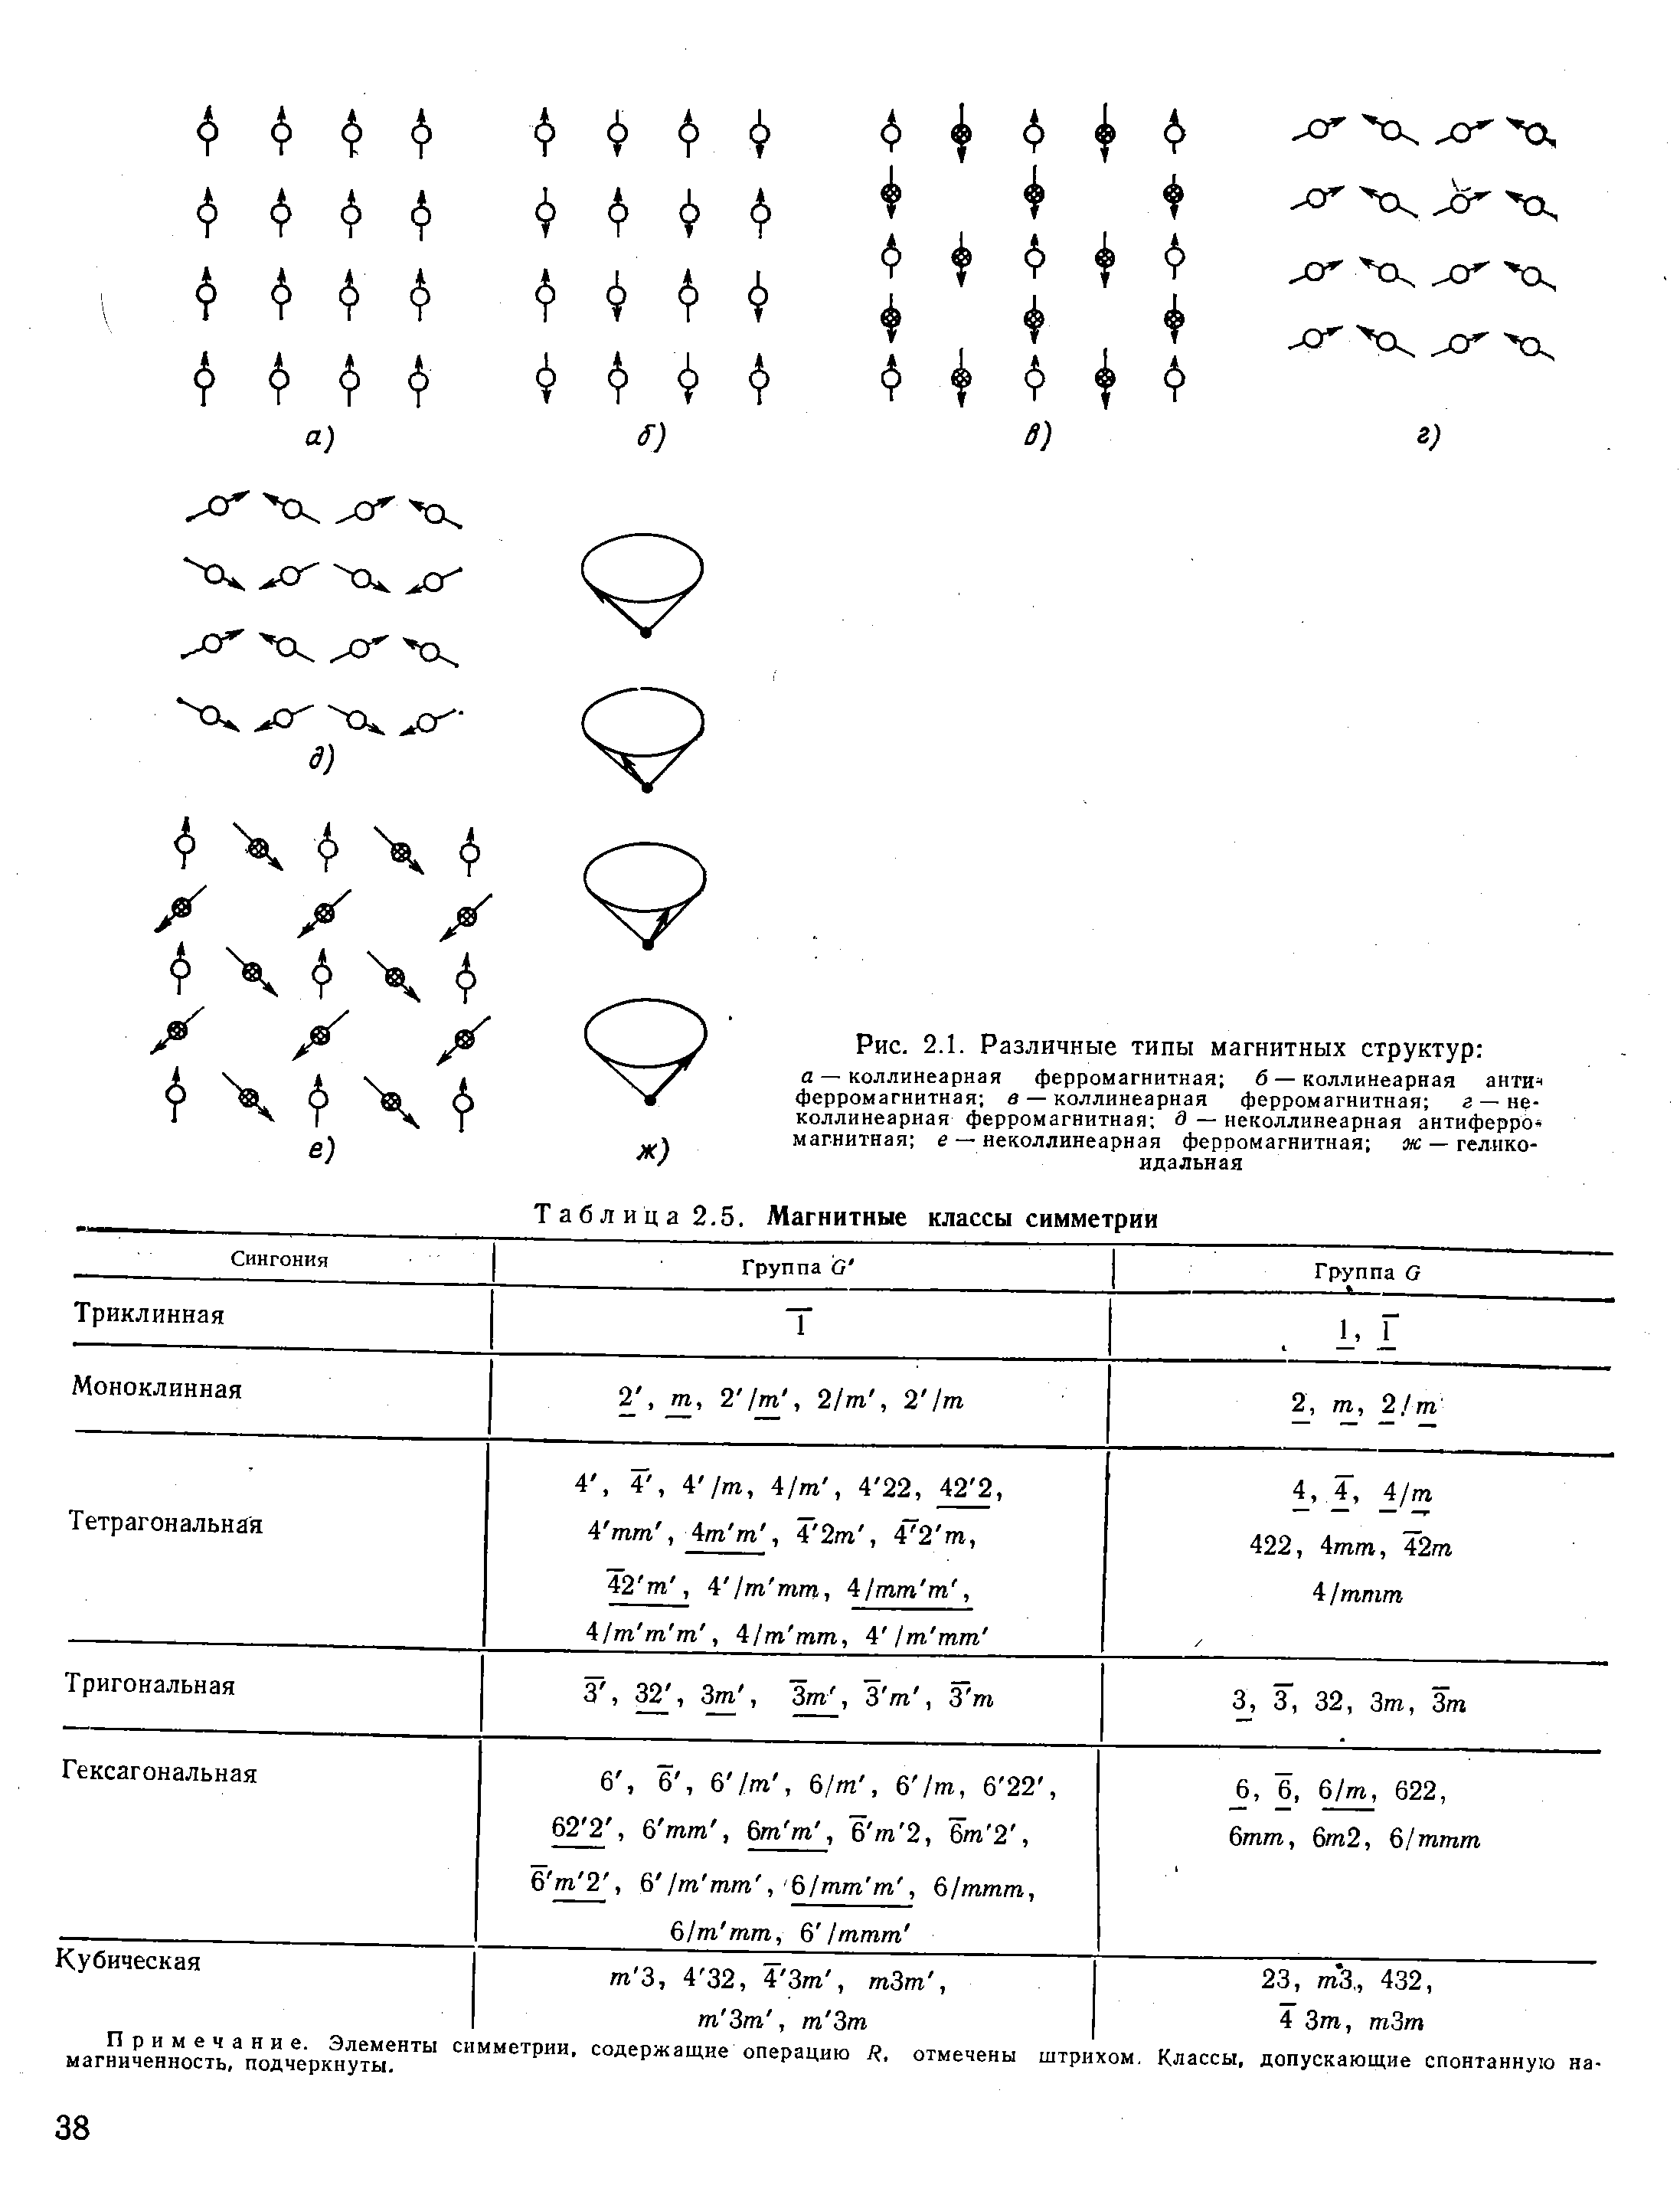 Таблица 2.5. Магнитные классы симметрии 
